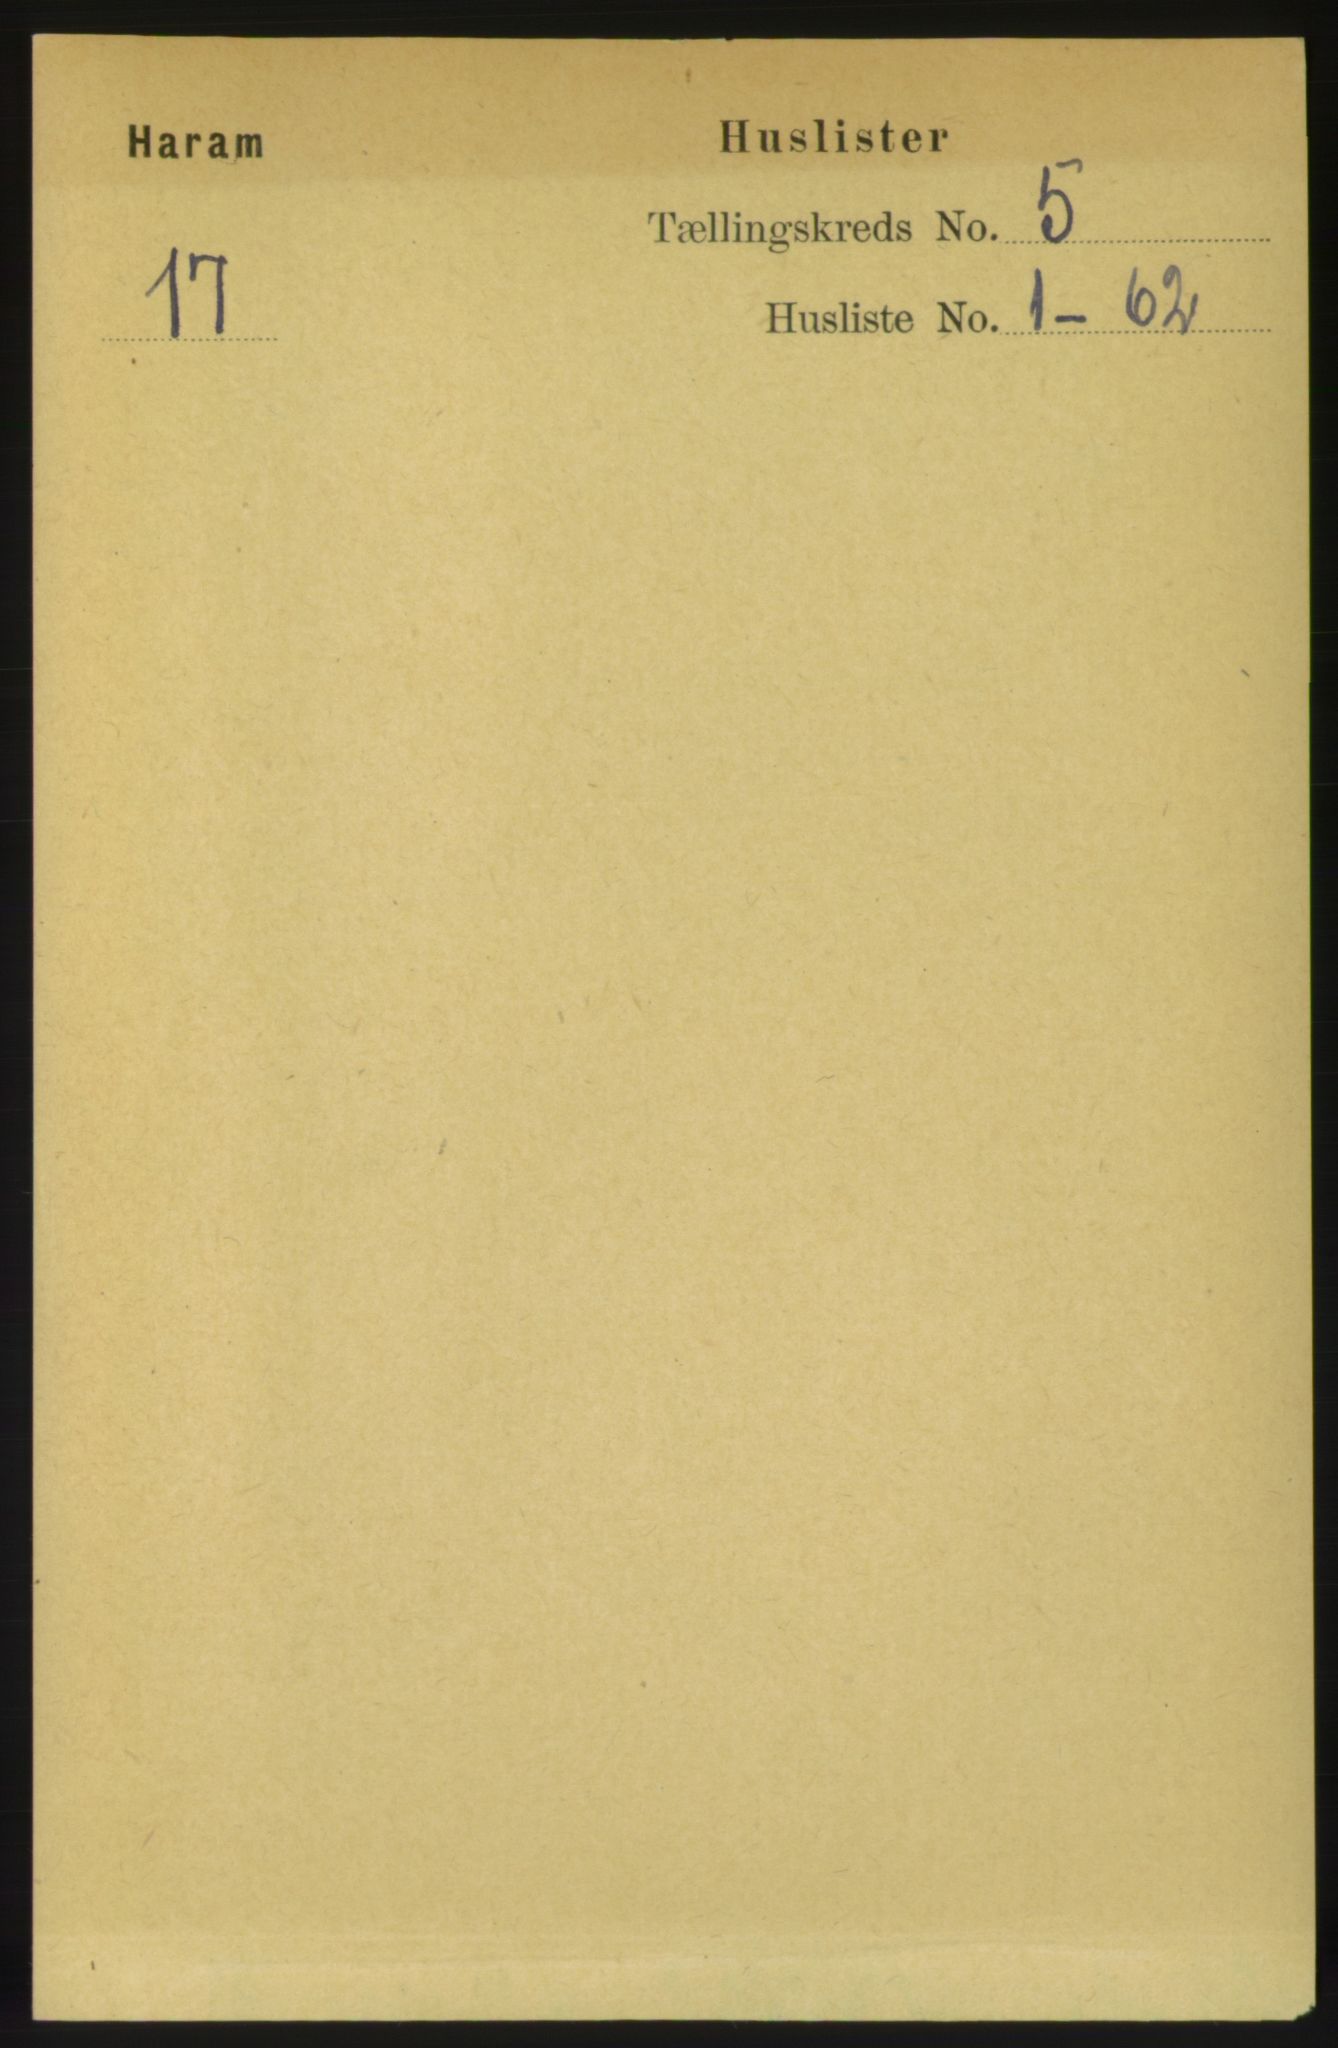 RA, Folketelling 1891 for 1534 Haram herred, 1891, s. 2330